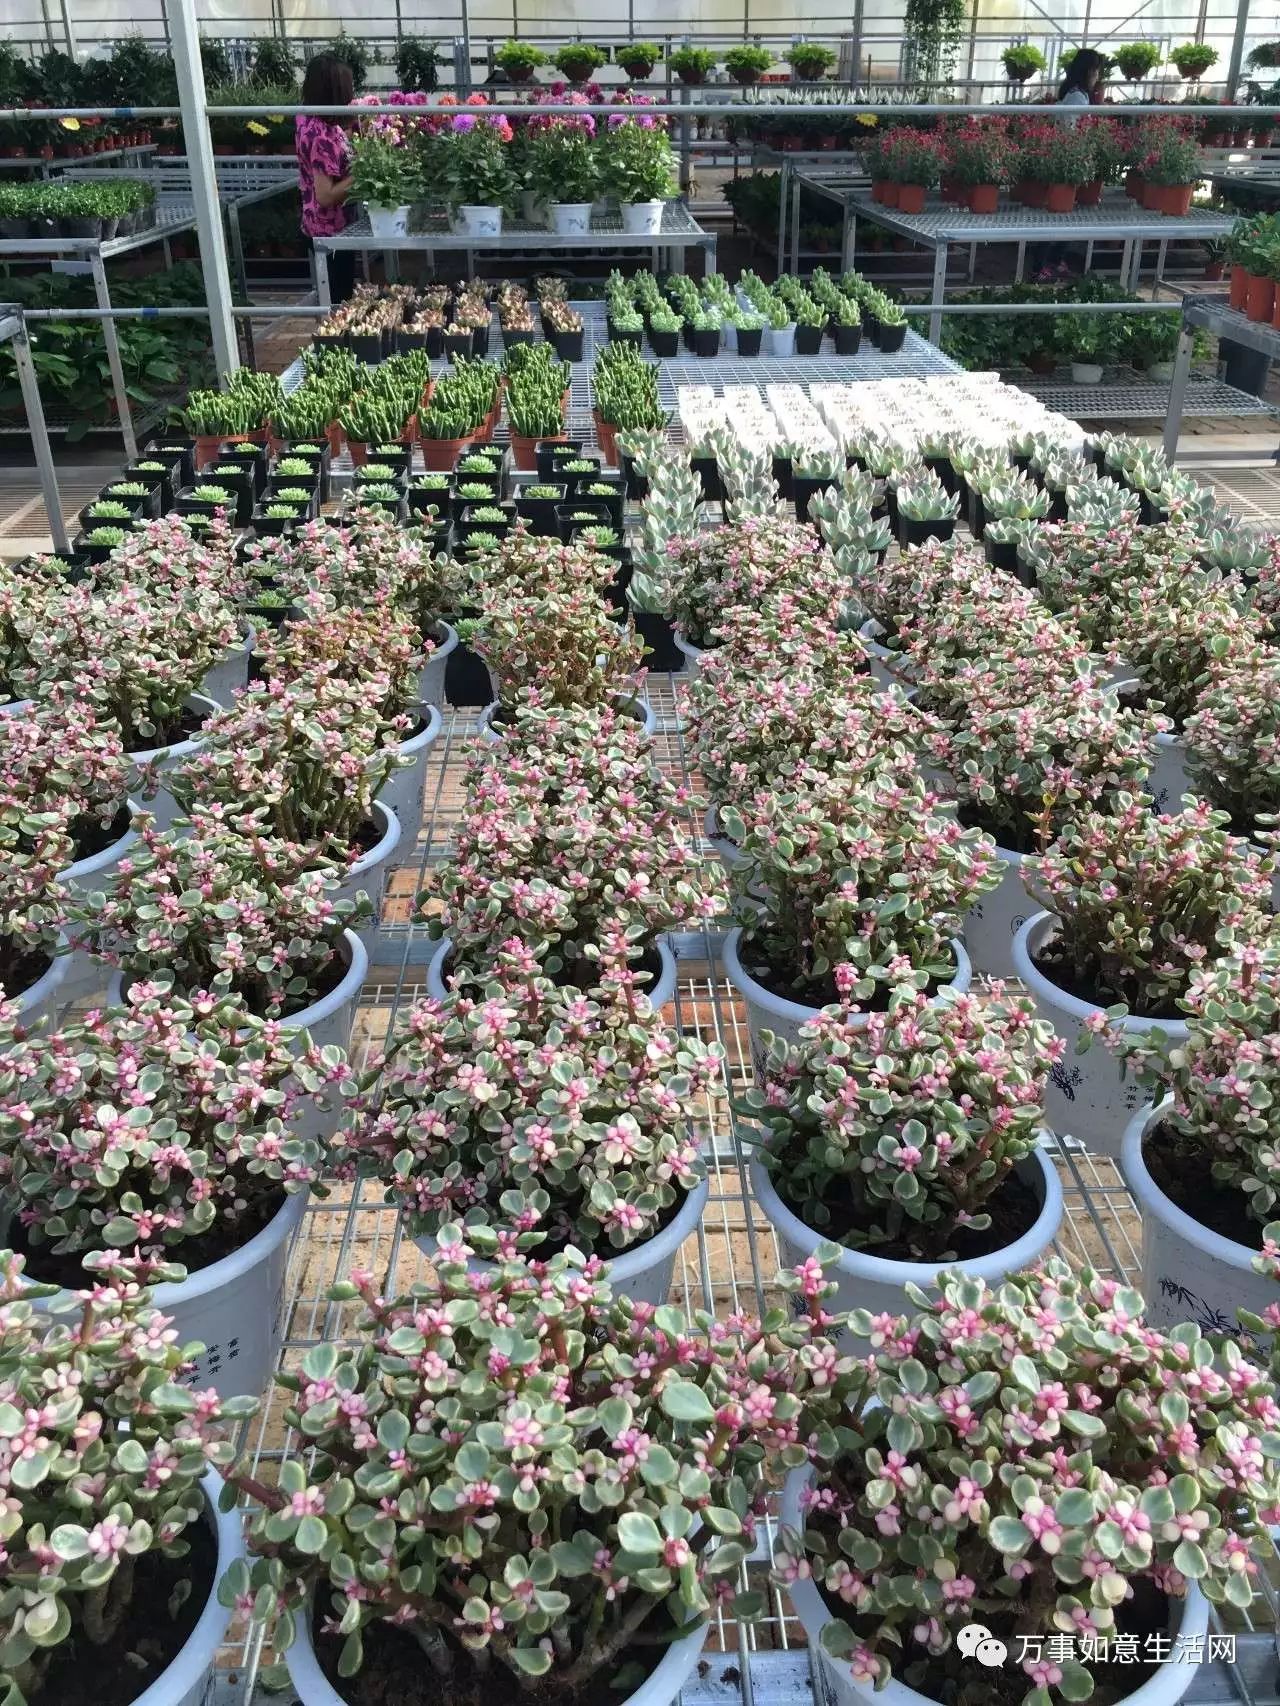 【如意花卉】顺义最大花卉基地本月26号正式营业,前200名到场送绿植!